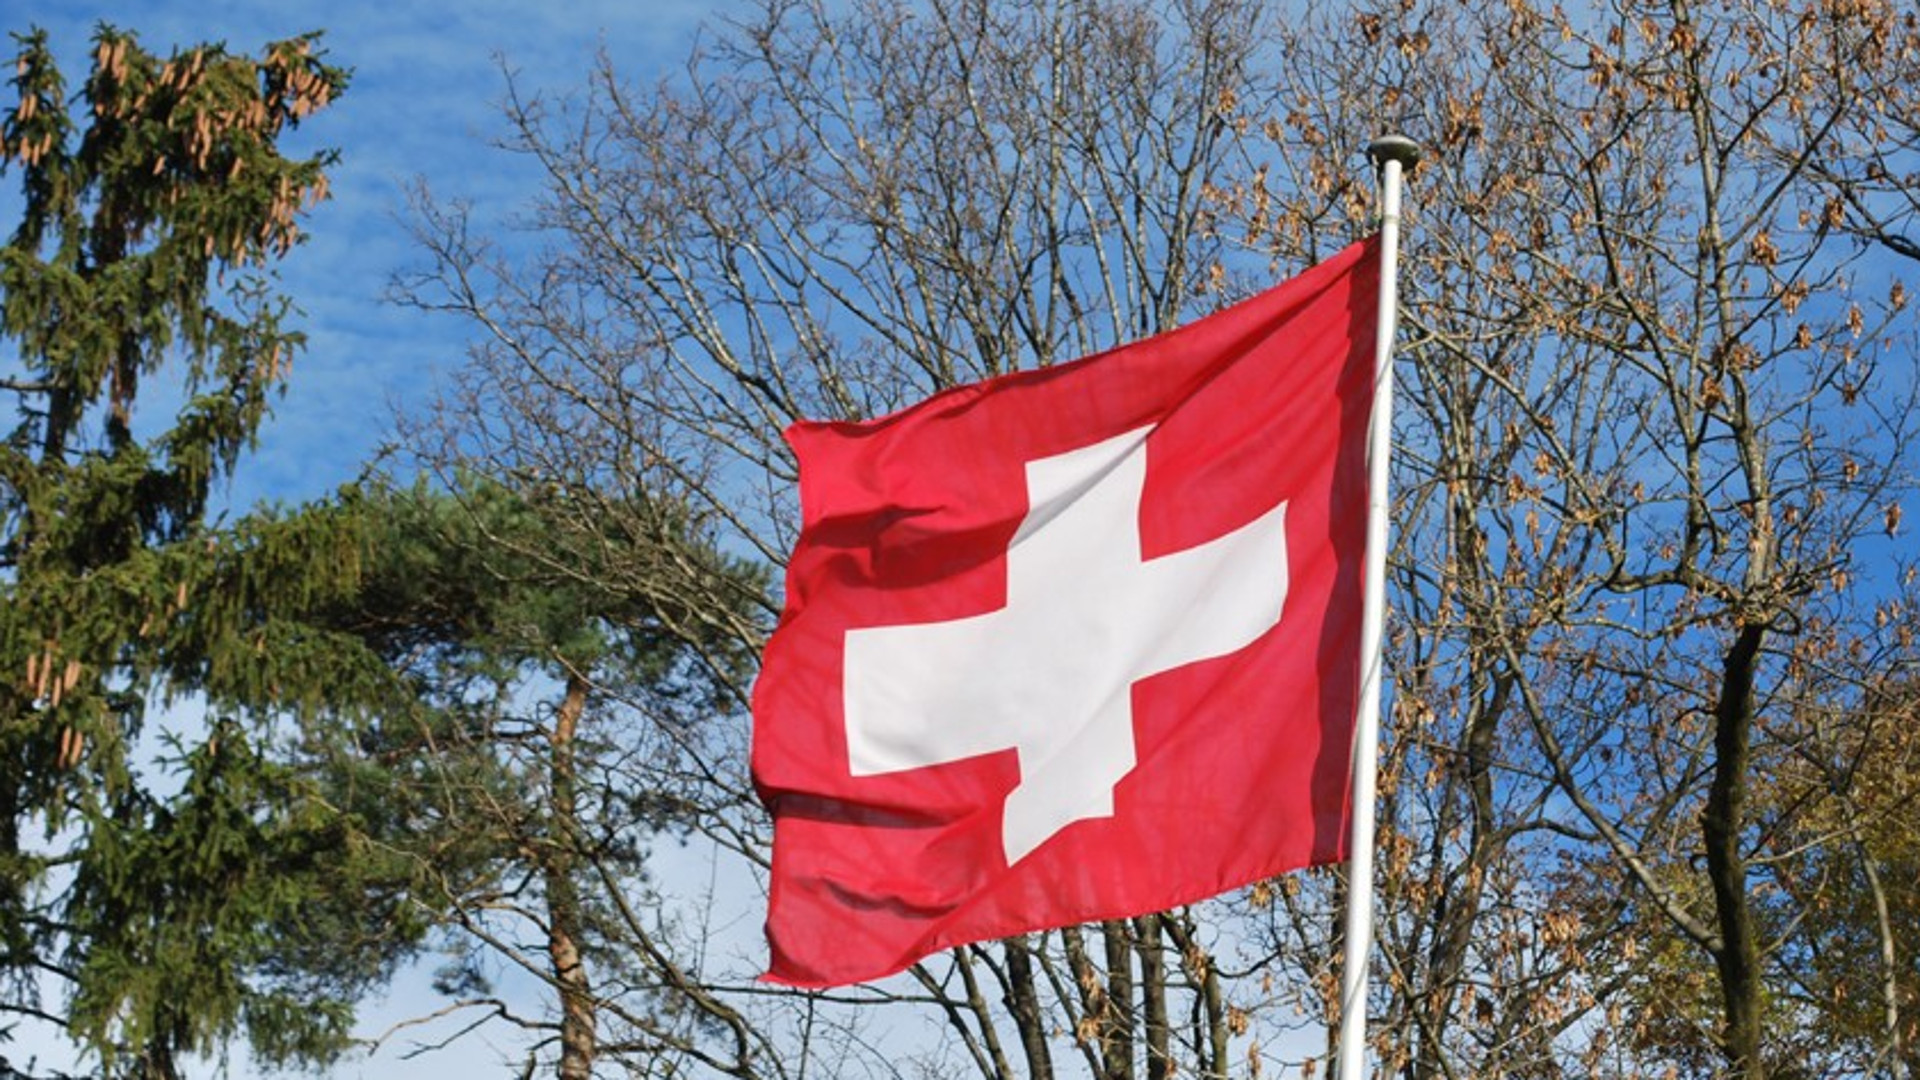 Neue Nationalhymne Weisses Kreuz Auf Rotem Grund Siegt Im Wettbewerb Kath Ch